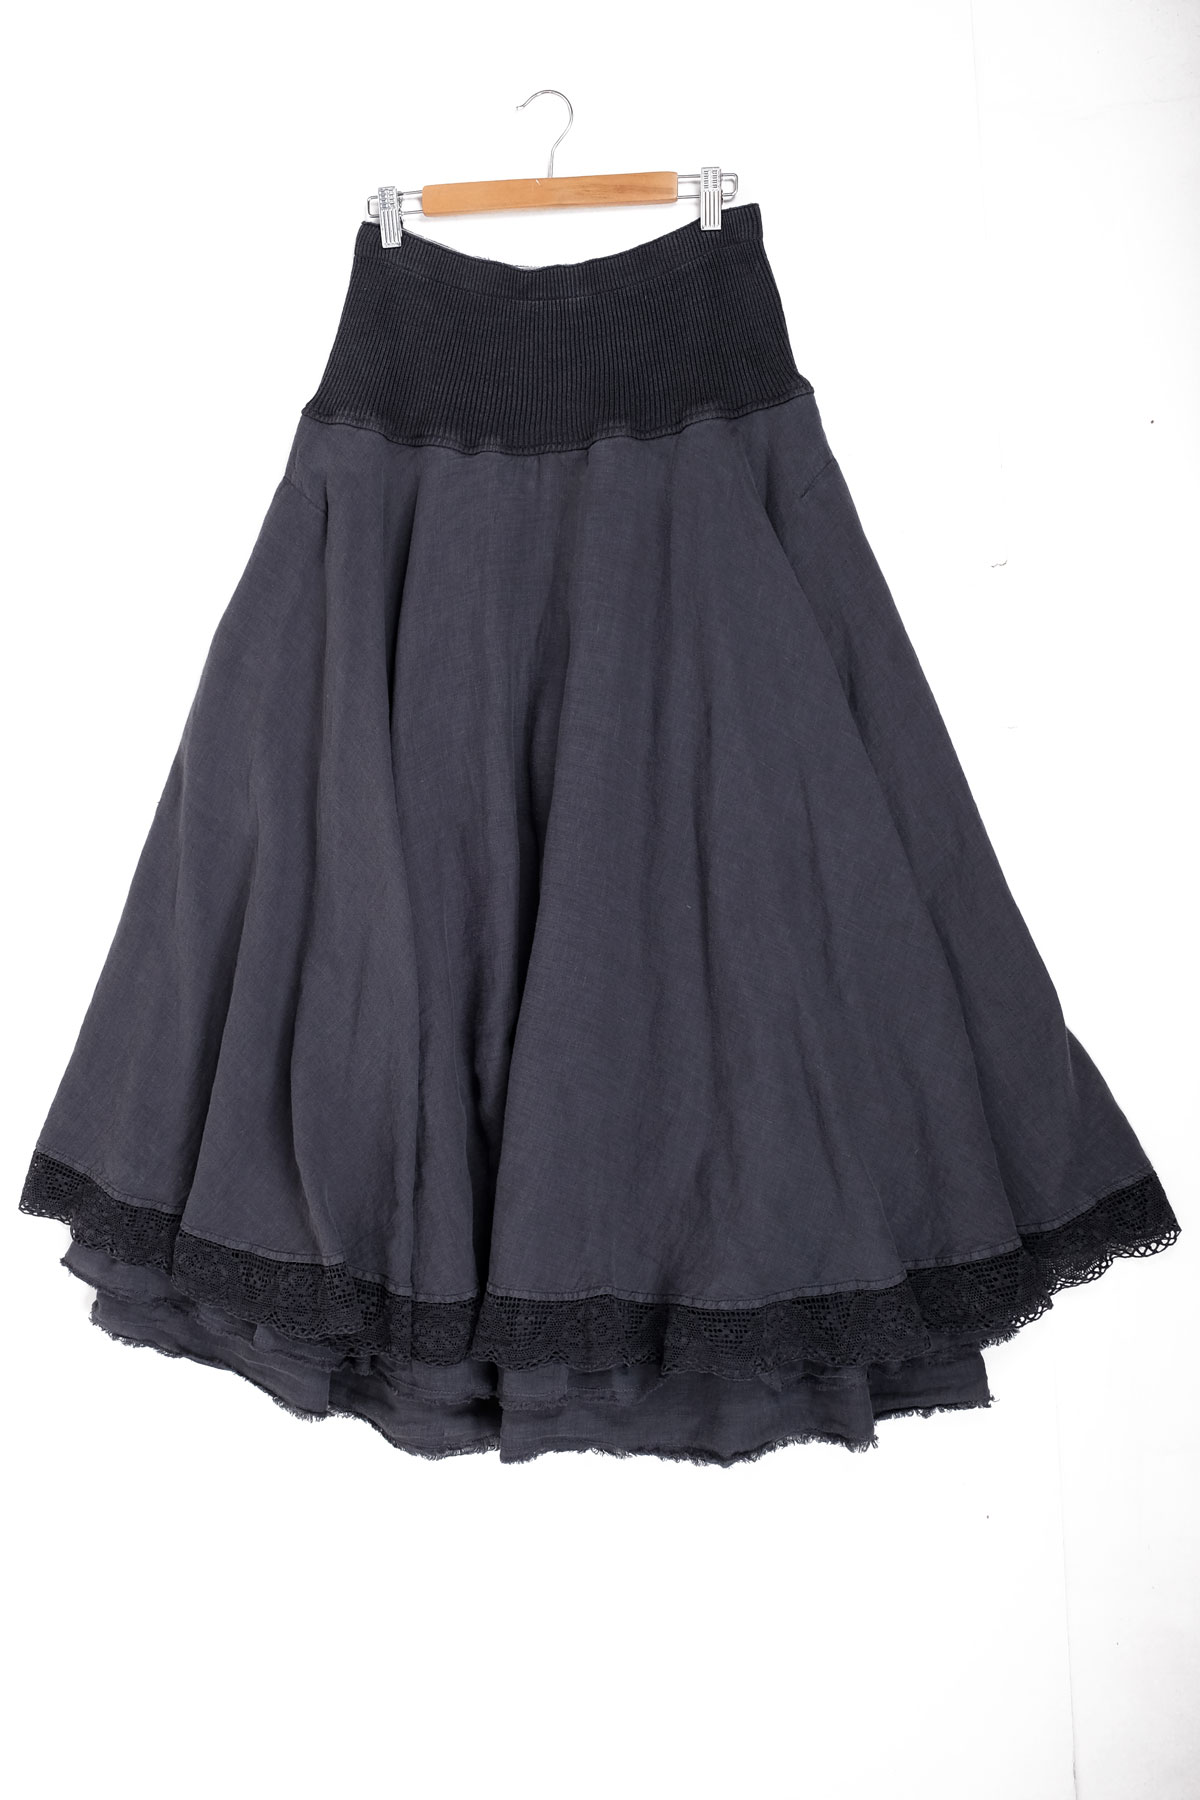 Stella - double layered linen skirt - Aurea Vita